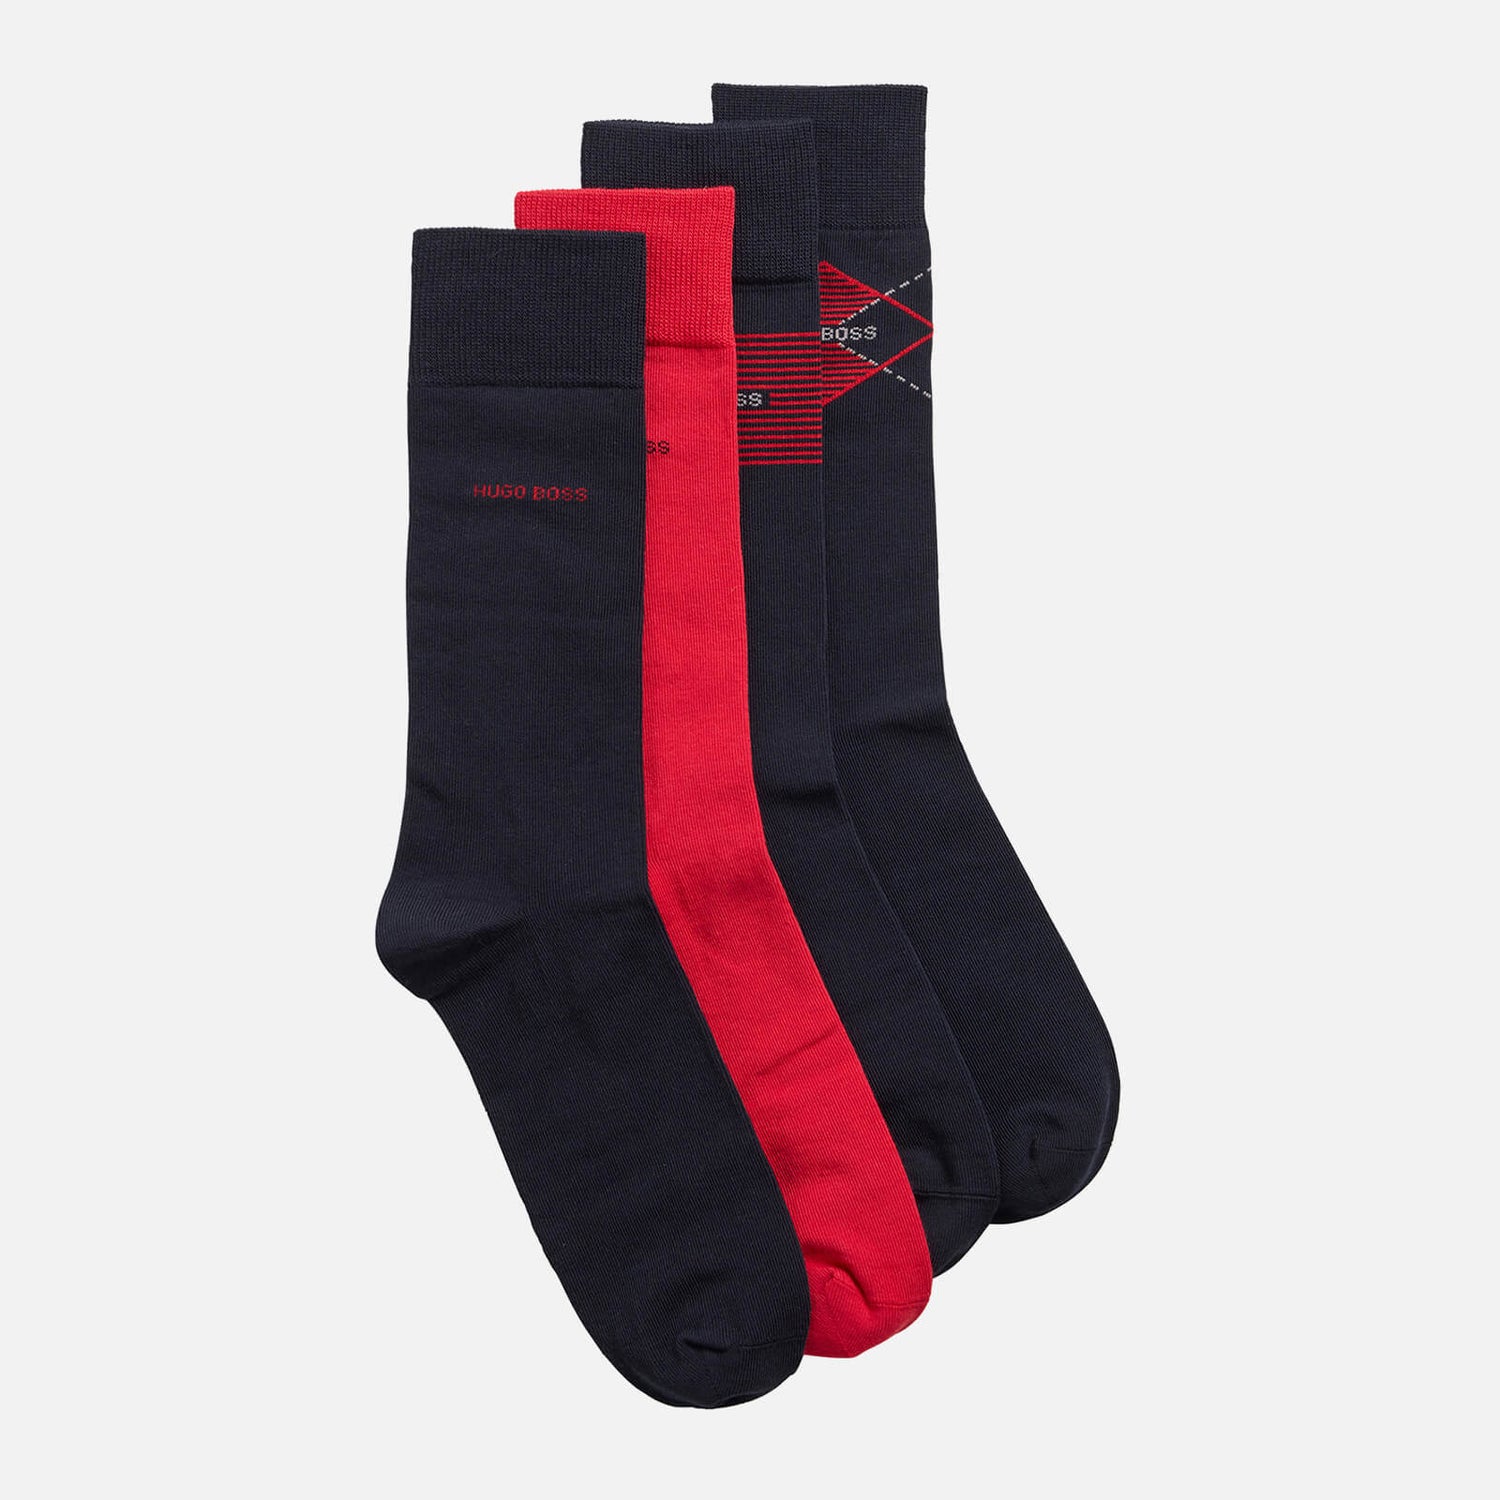 BOSS Bodywear Men's 4-Pack Gift Set Socks - Dark Blue